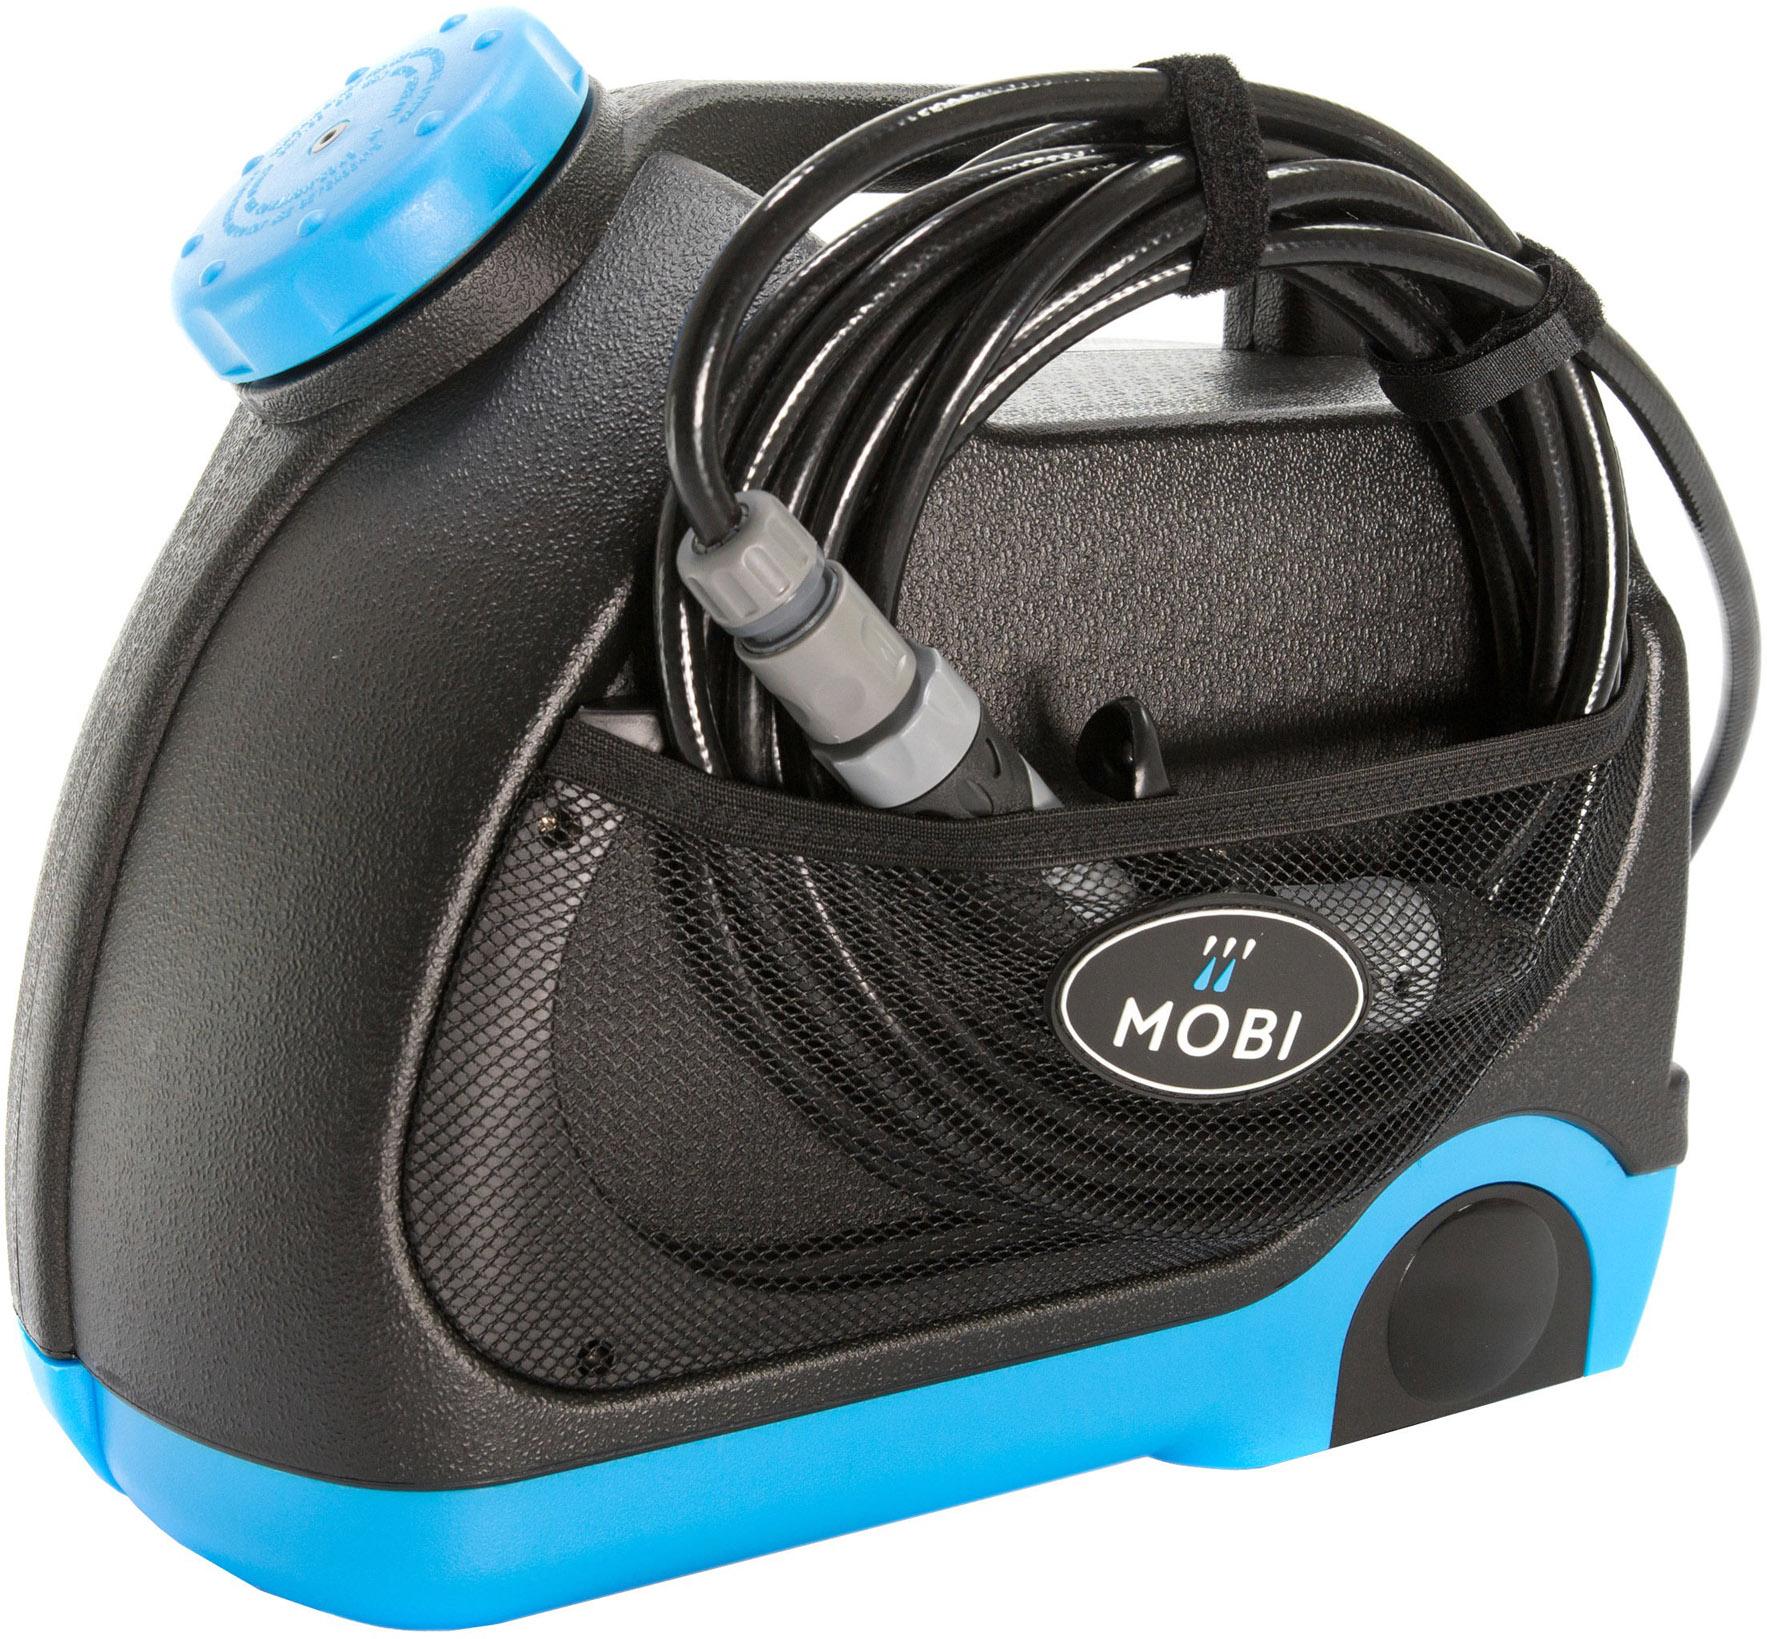 Mobi V-15 Portable Bike Pressure Washer  Blue